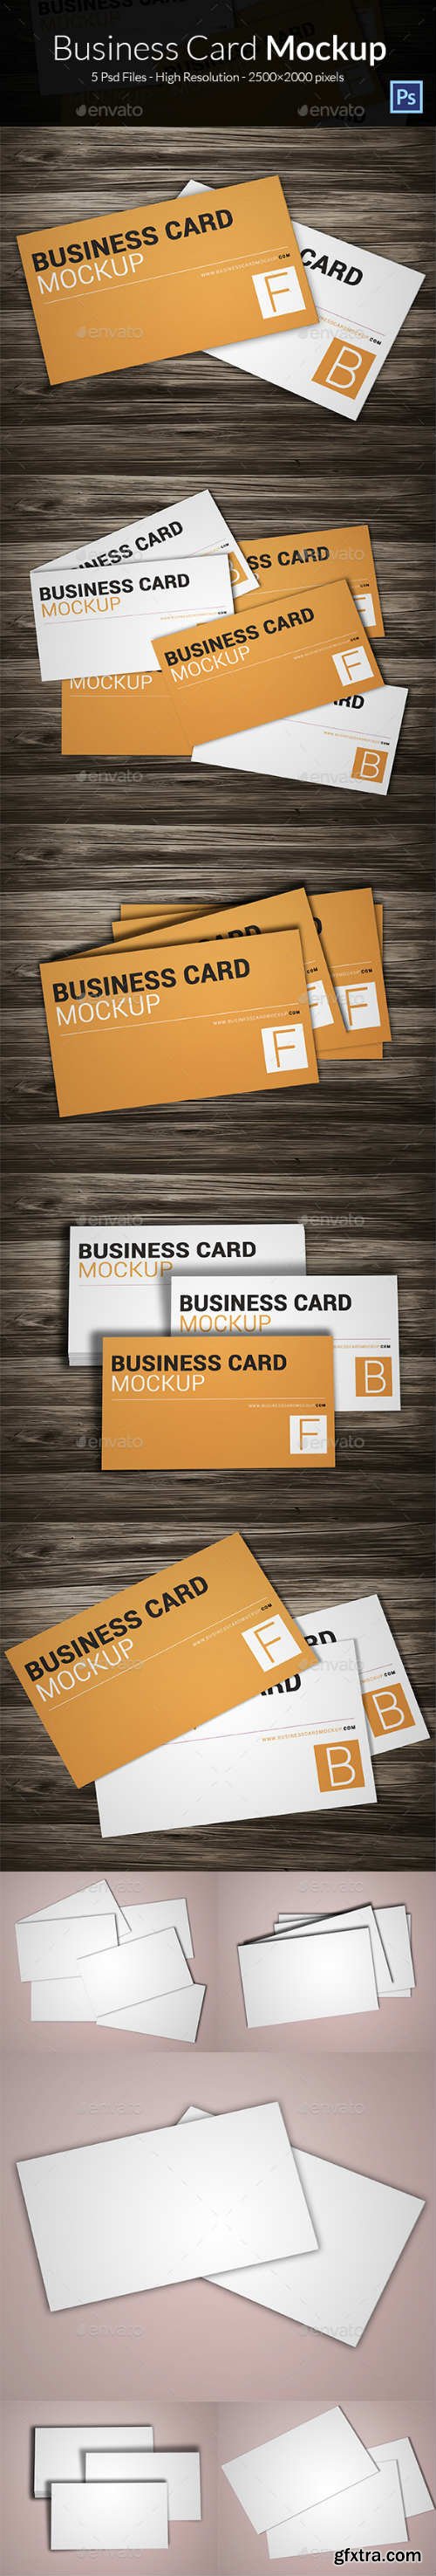 GR - Business Card Mockup 14488740